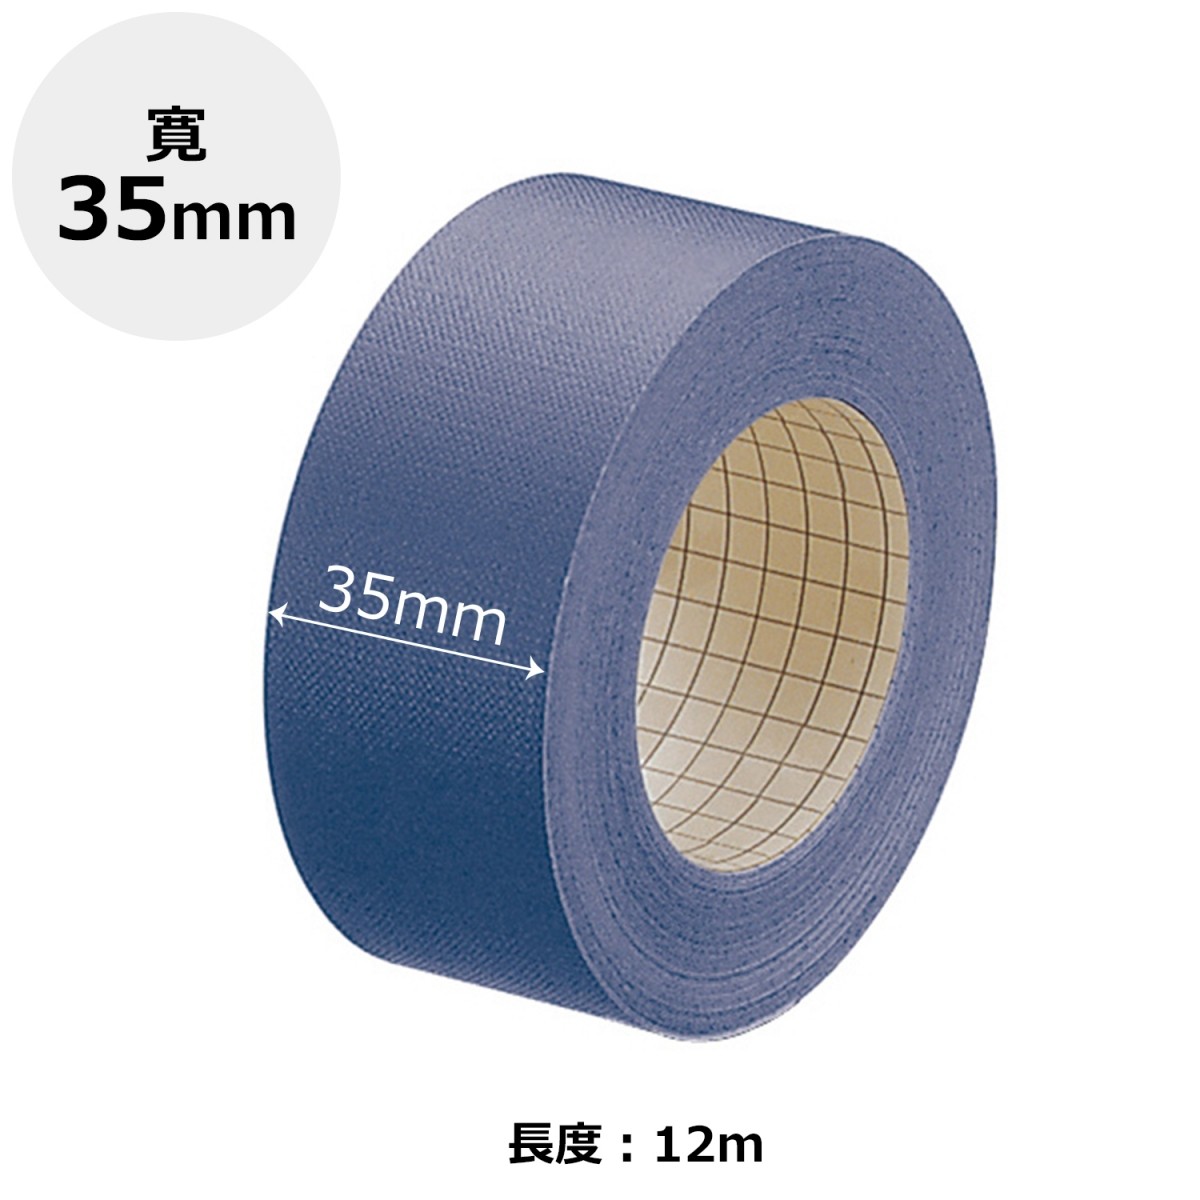 【芥菜籽文具】//PLUS 普樂士 // 書背膠帶 布紋膠帶 35mm (藍) 43-734